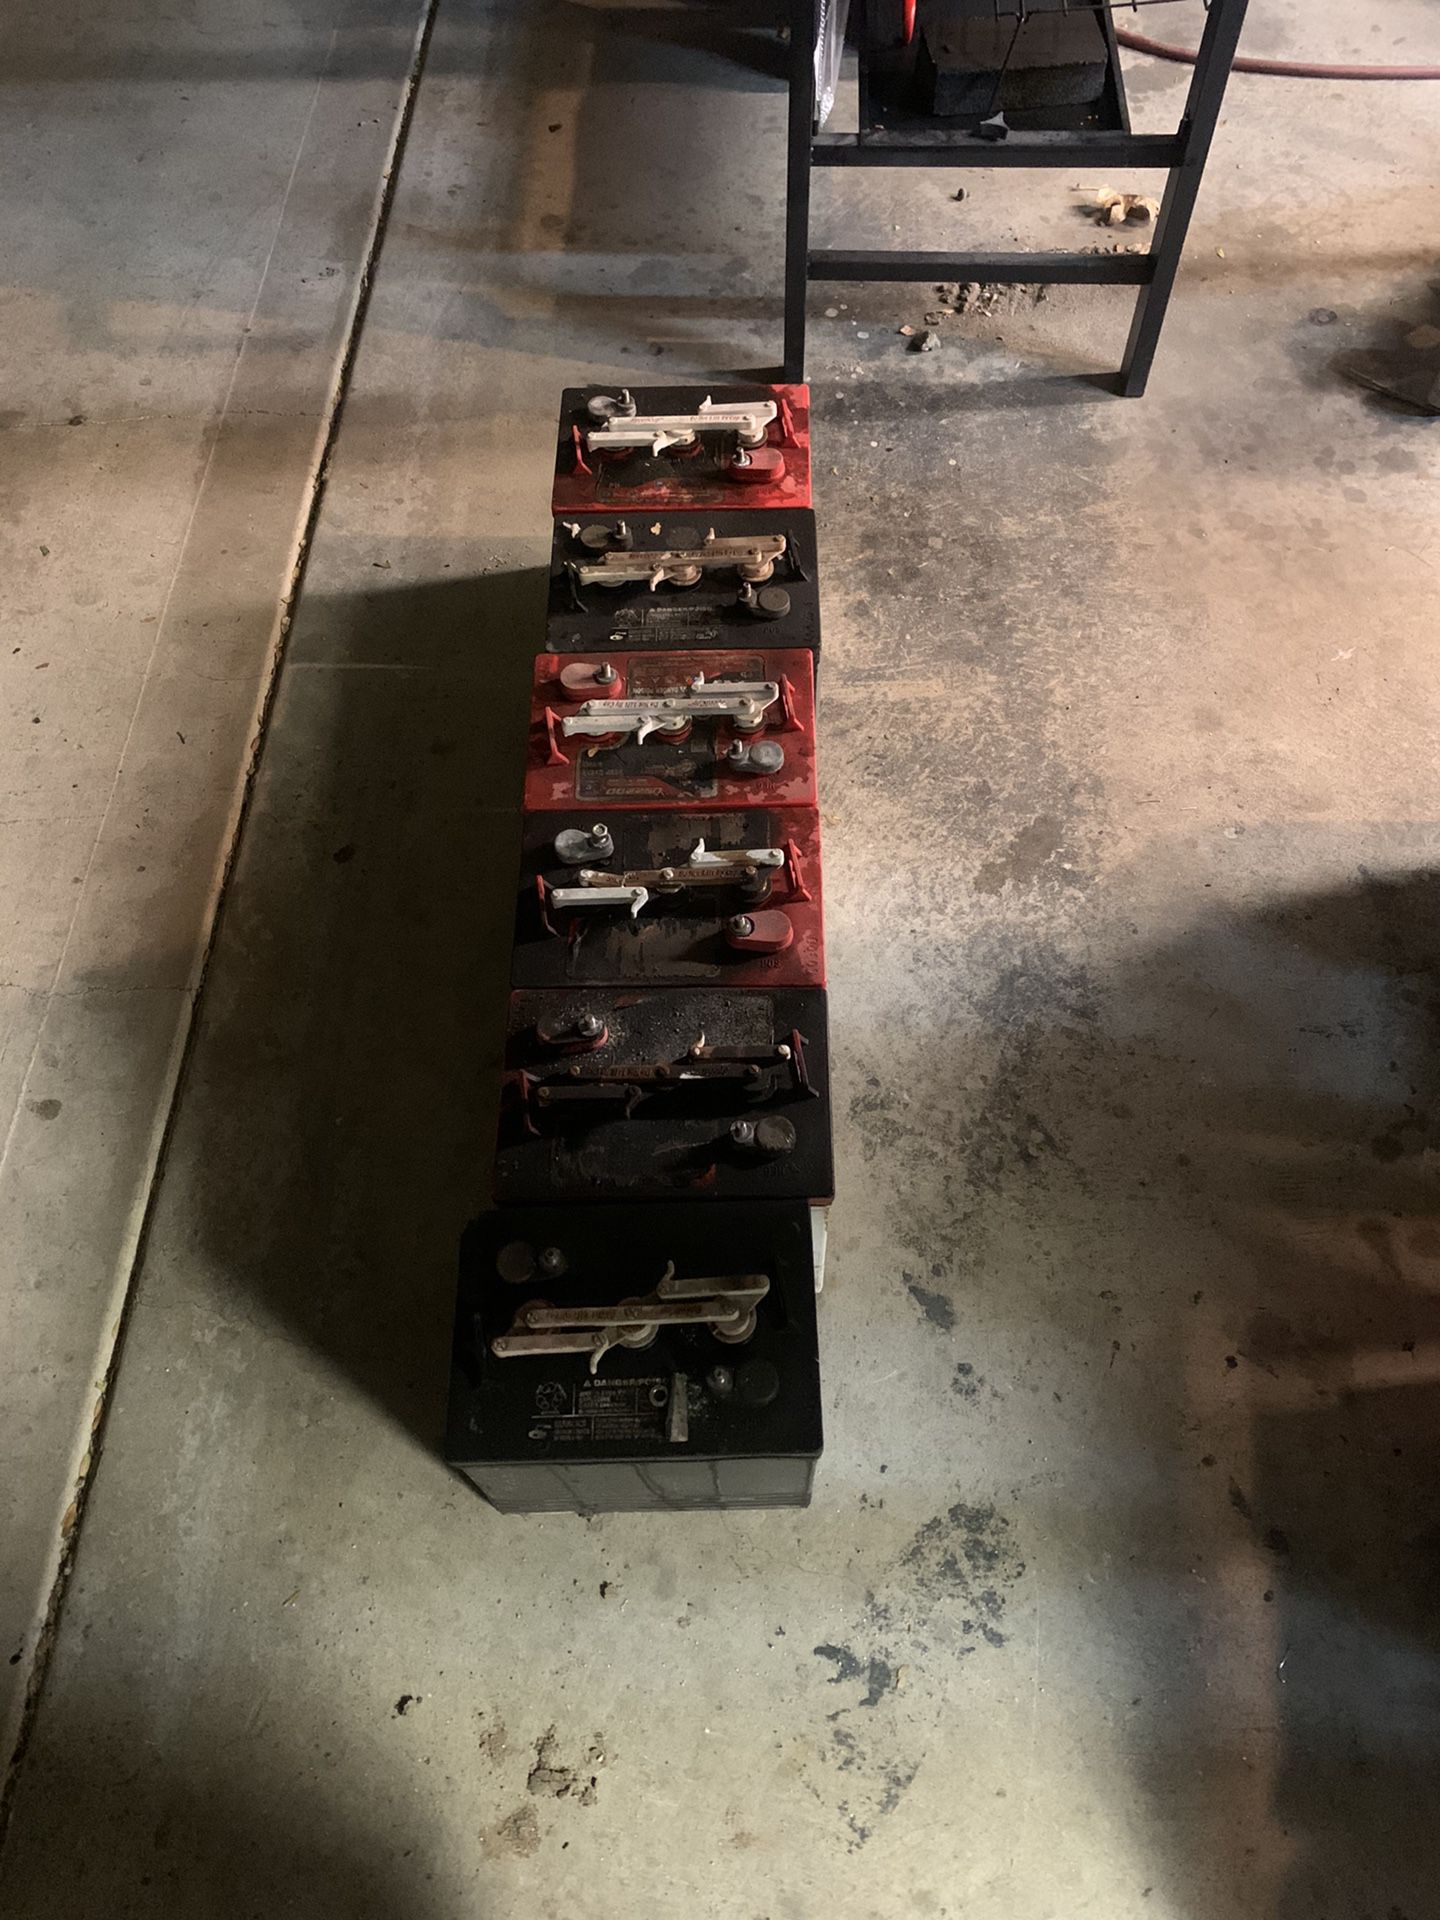 all six golf cart batteries